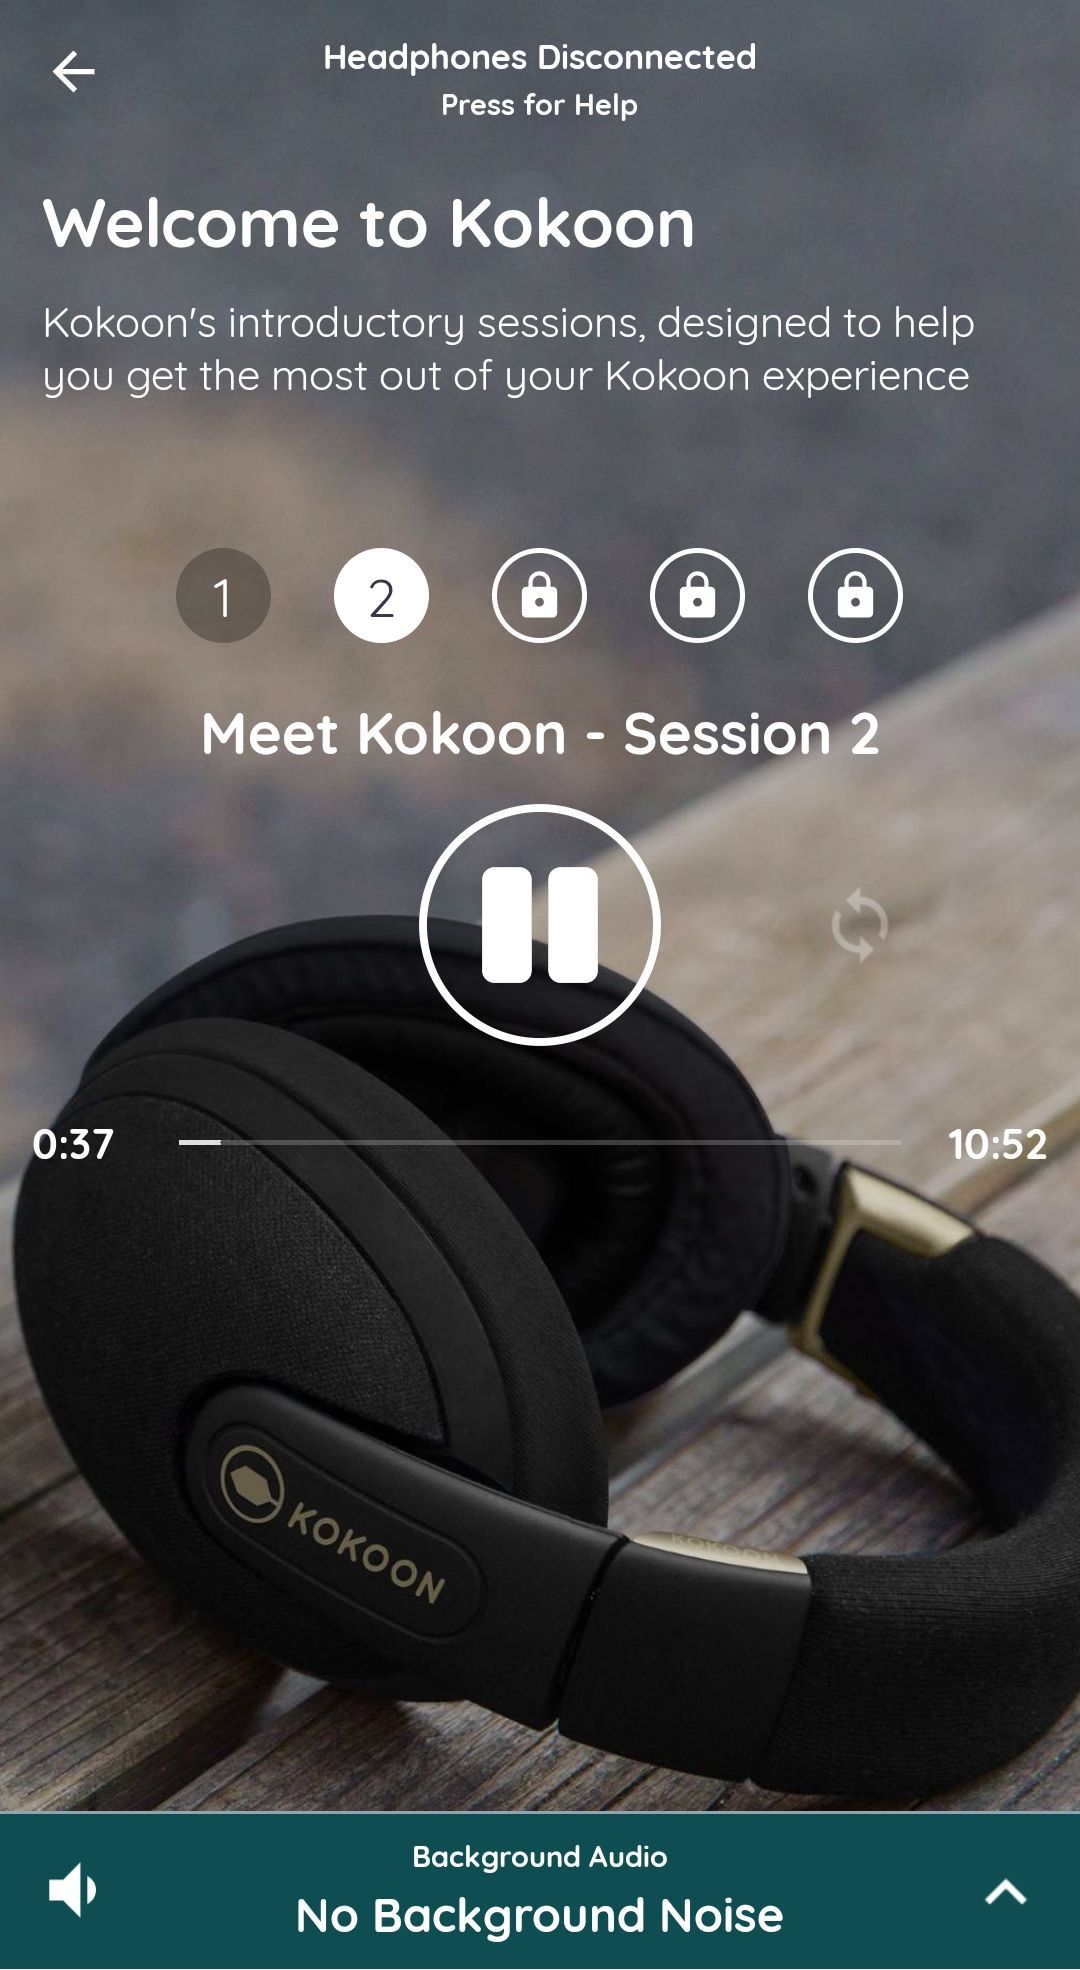 Kokoon Sleep Headphones Welcome to Kokoon Session 2